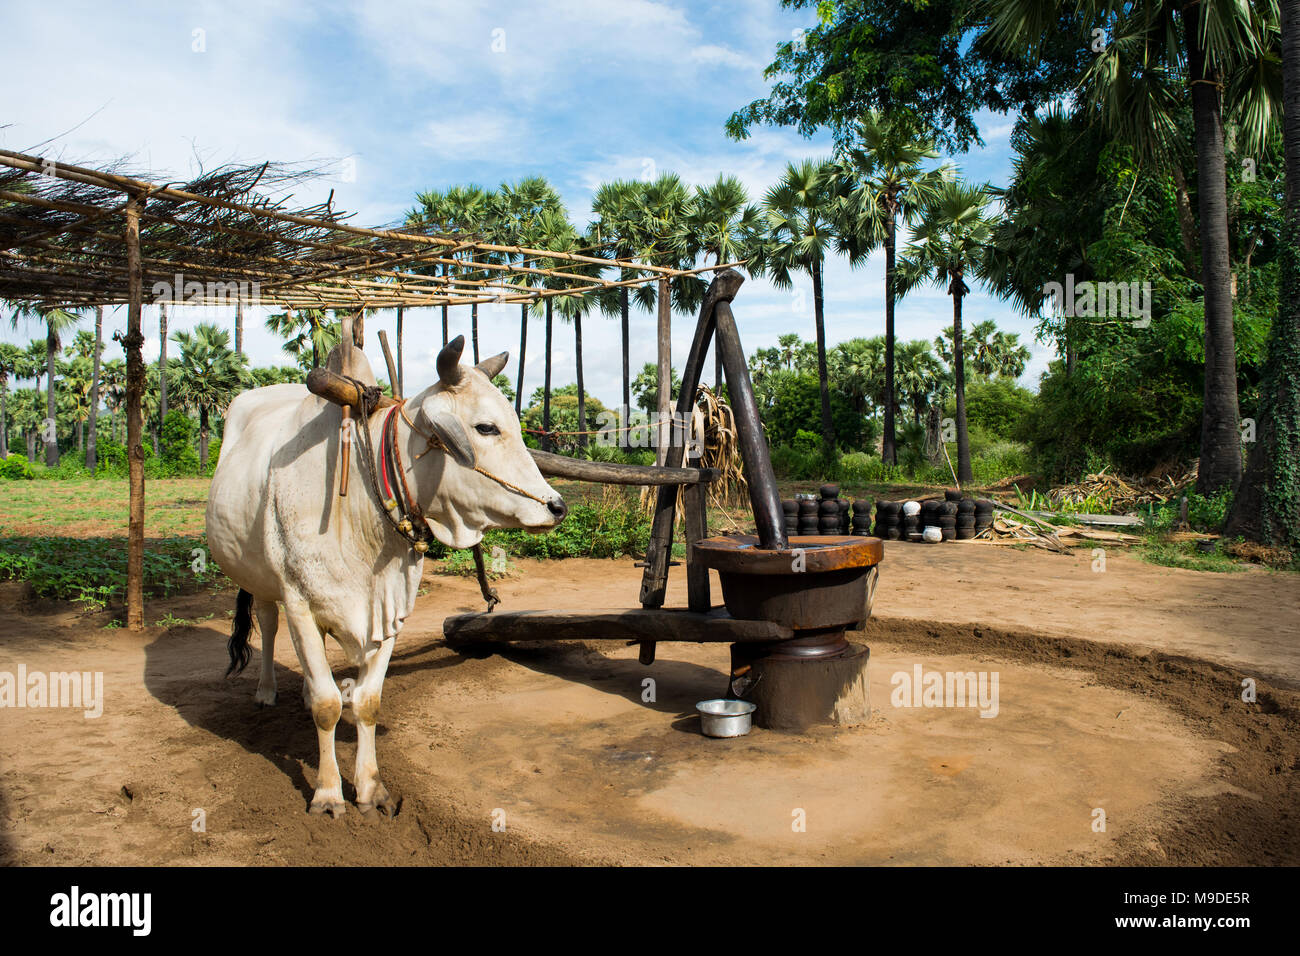 Boeuf blanc mâle tirant un moulin à huile, utilisé pour moudre les arachides et la production d'huile d'arachide. Les champs d'agriculture birmane de palmiers à tourner en rond les voies en Asie Banque D'Images